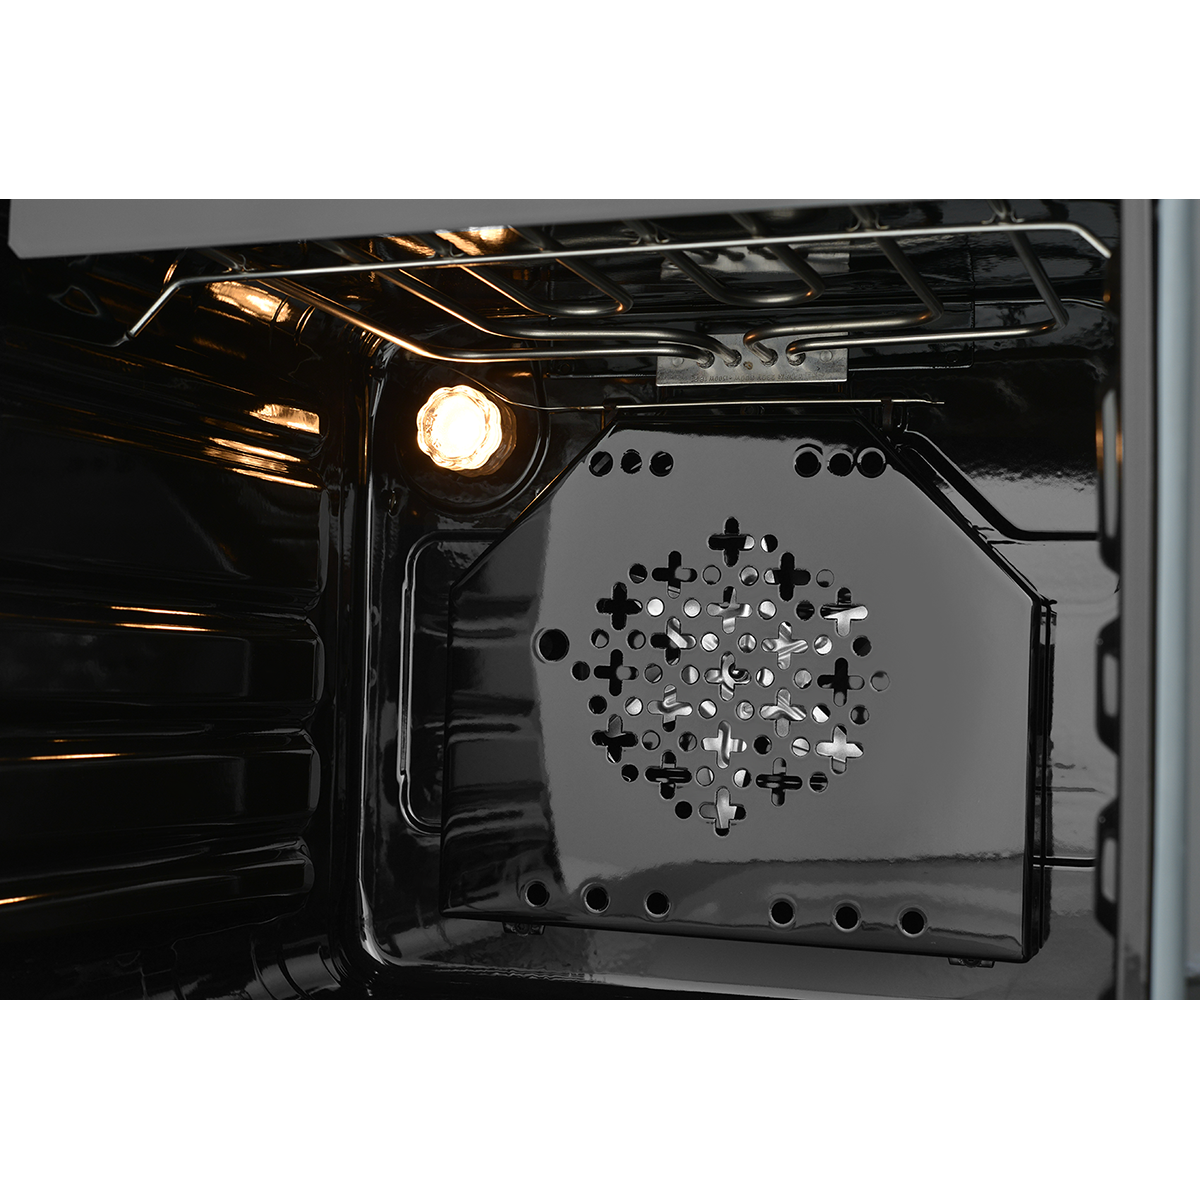 картинка Встраиваемый электрический духовой шкаф ZUGEL ZO А707 B, черный